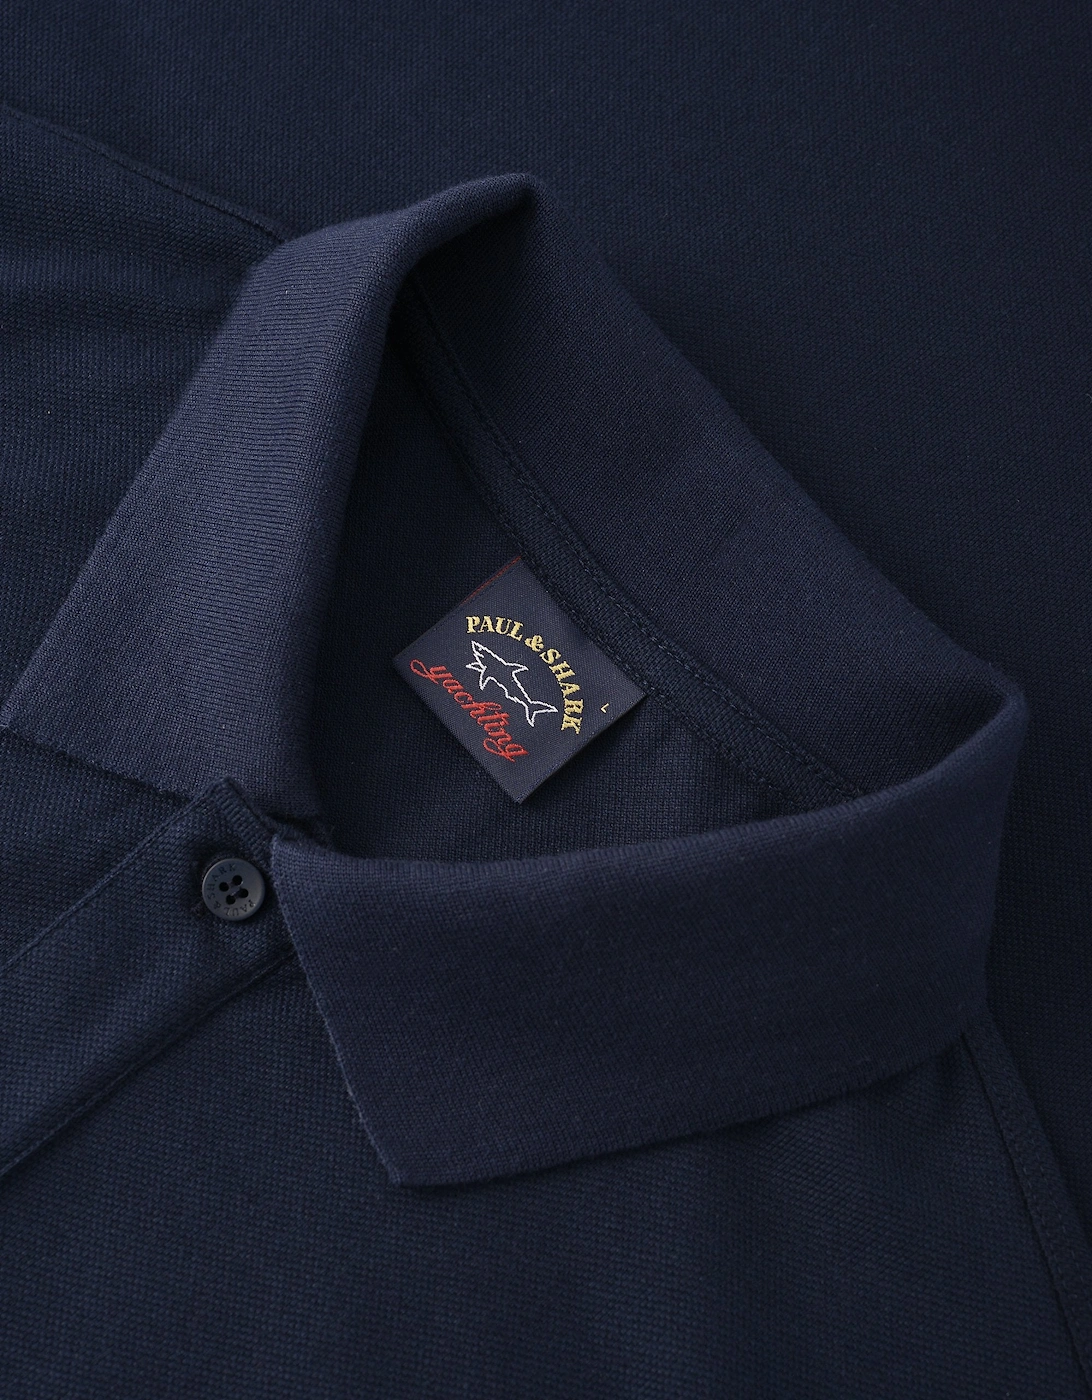 Pique Cotton Polo Shirt Navy